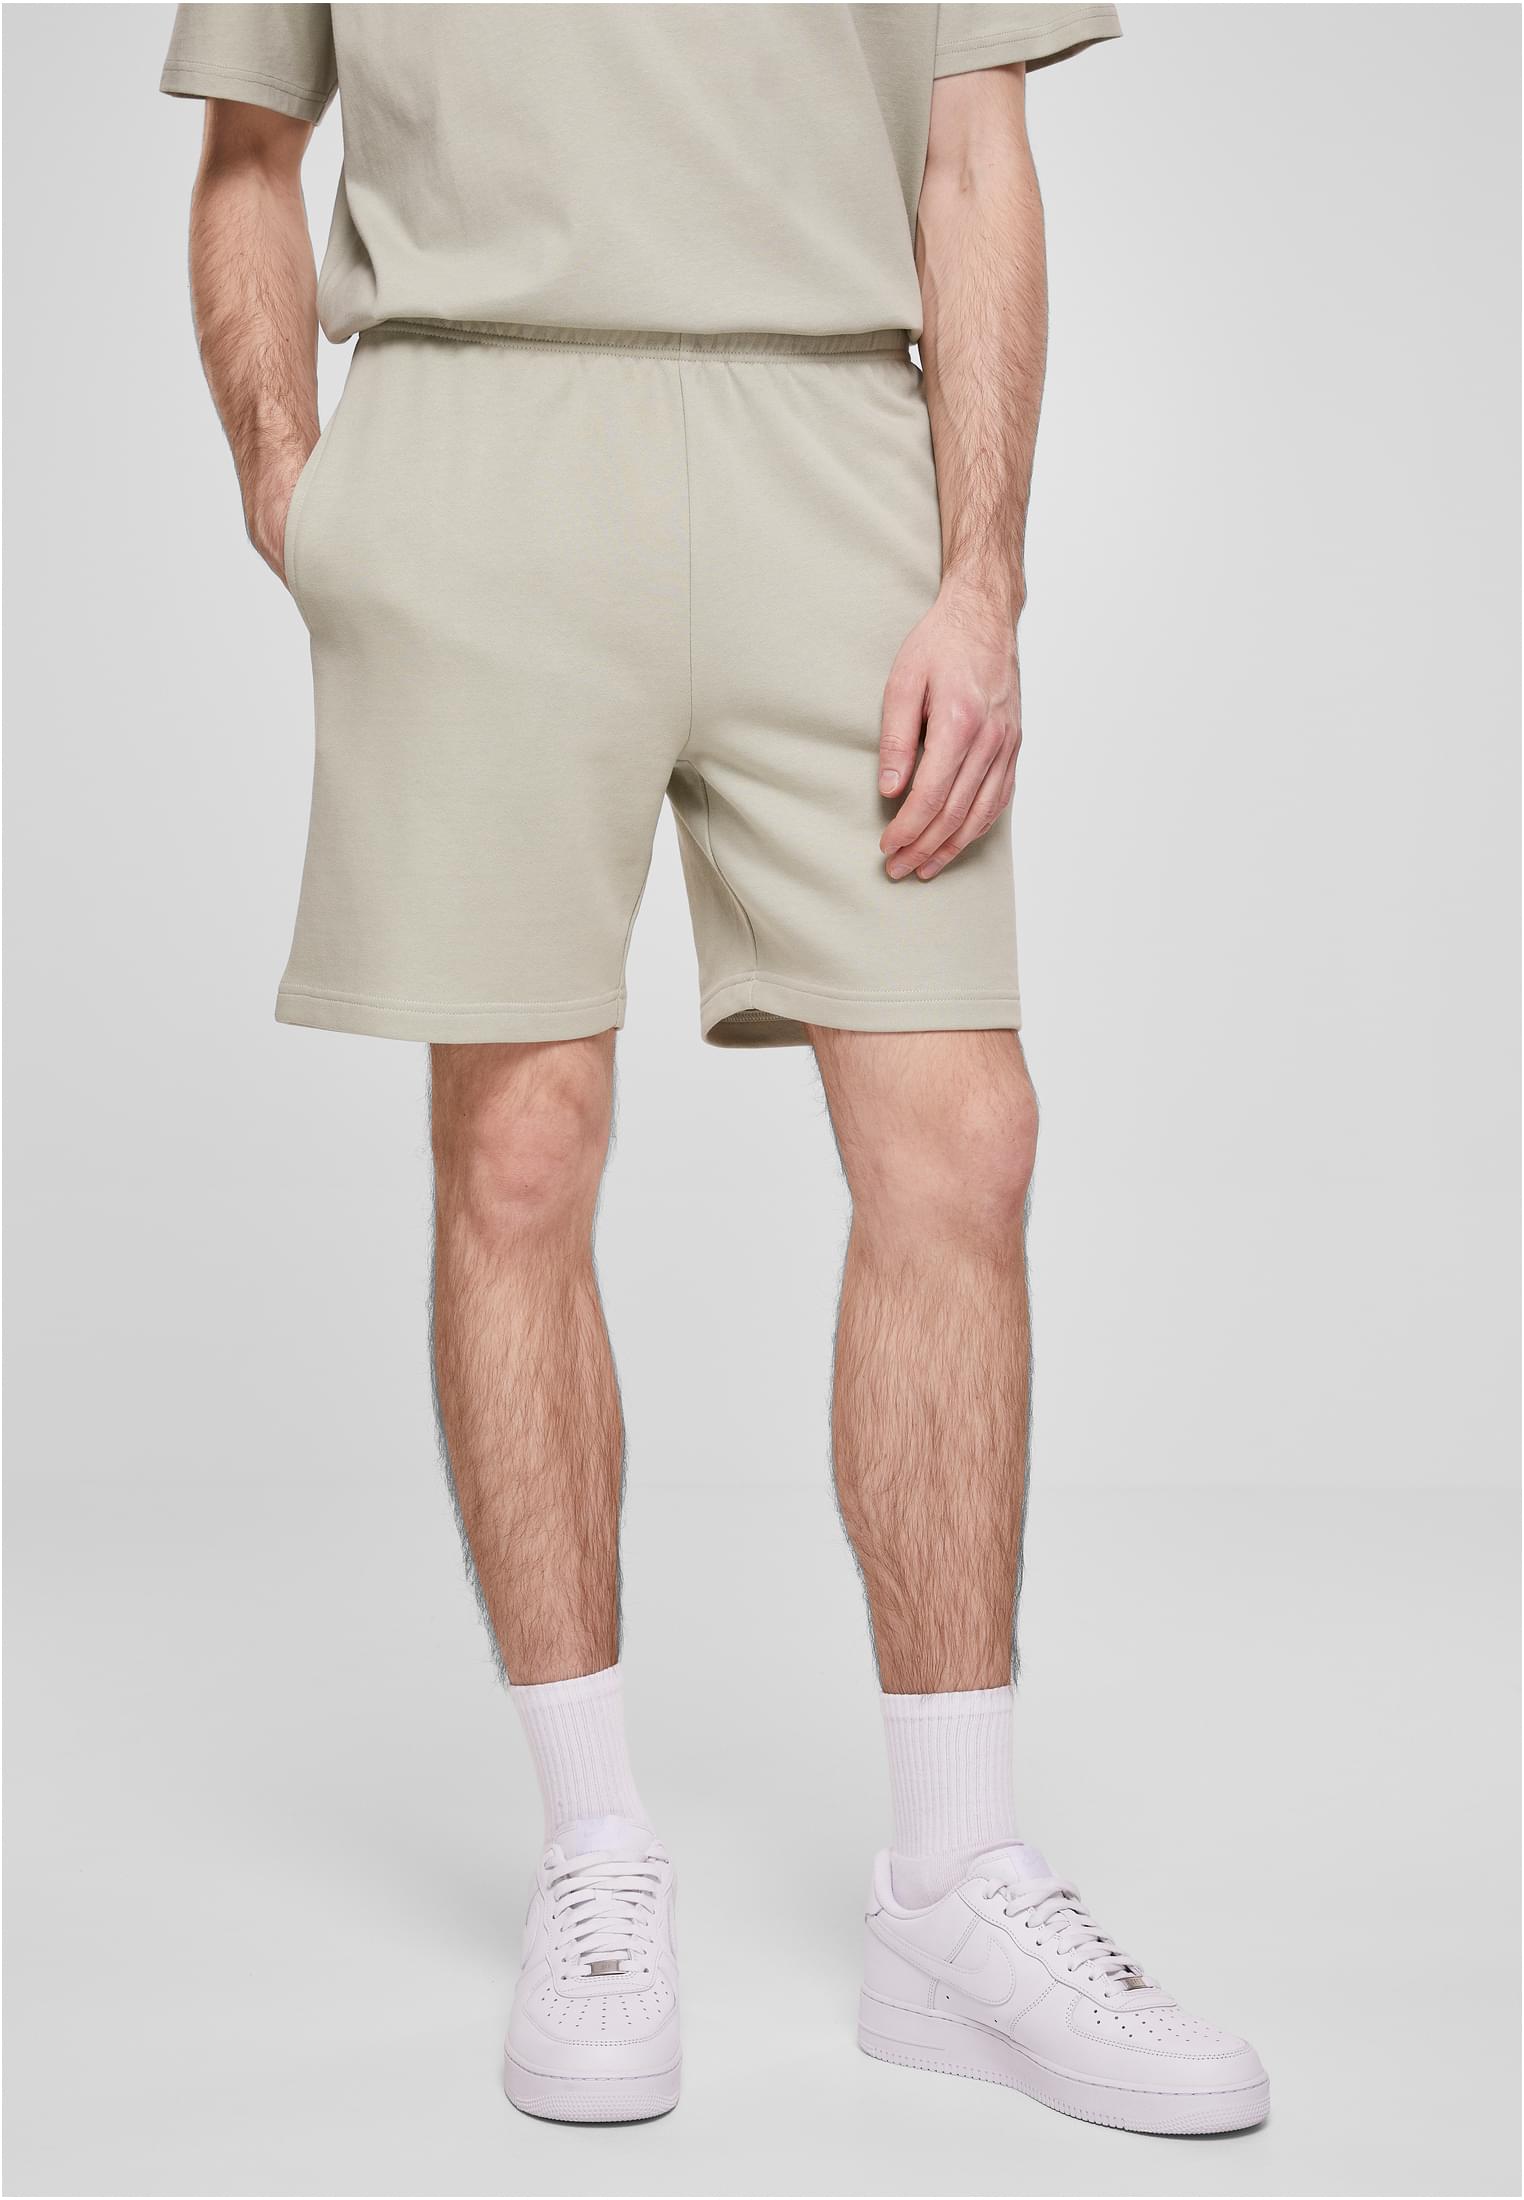 New softsalvia shorts